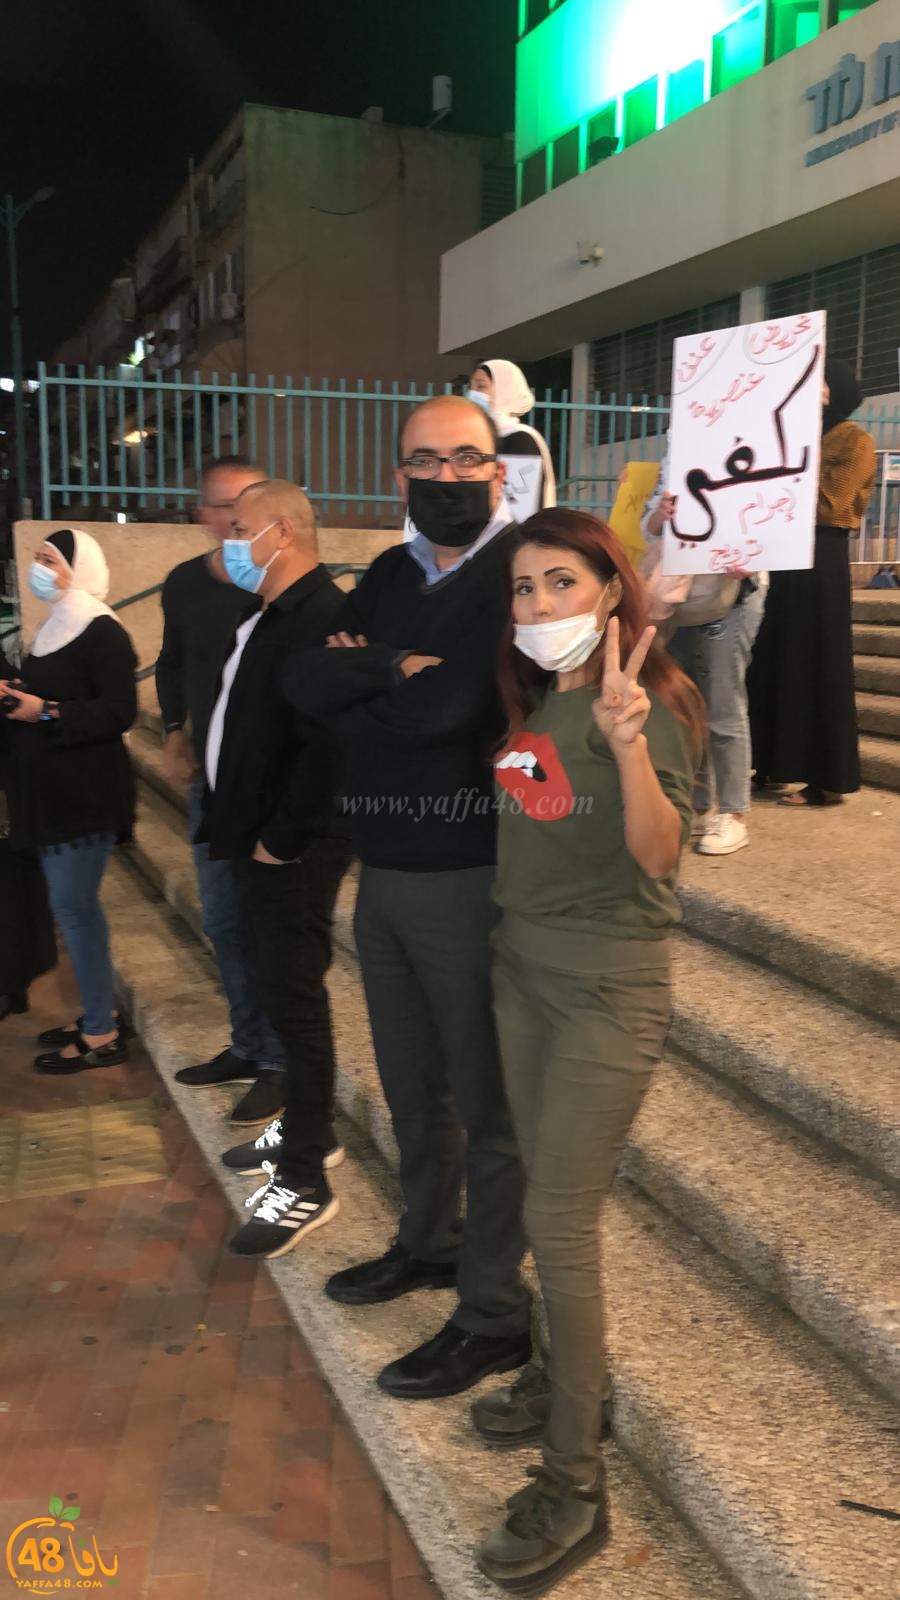   اللد: وقفة احتجاجية ضد تصريحات رئيس البلدية بحق المواطنين العرب 